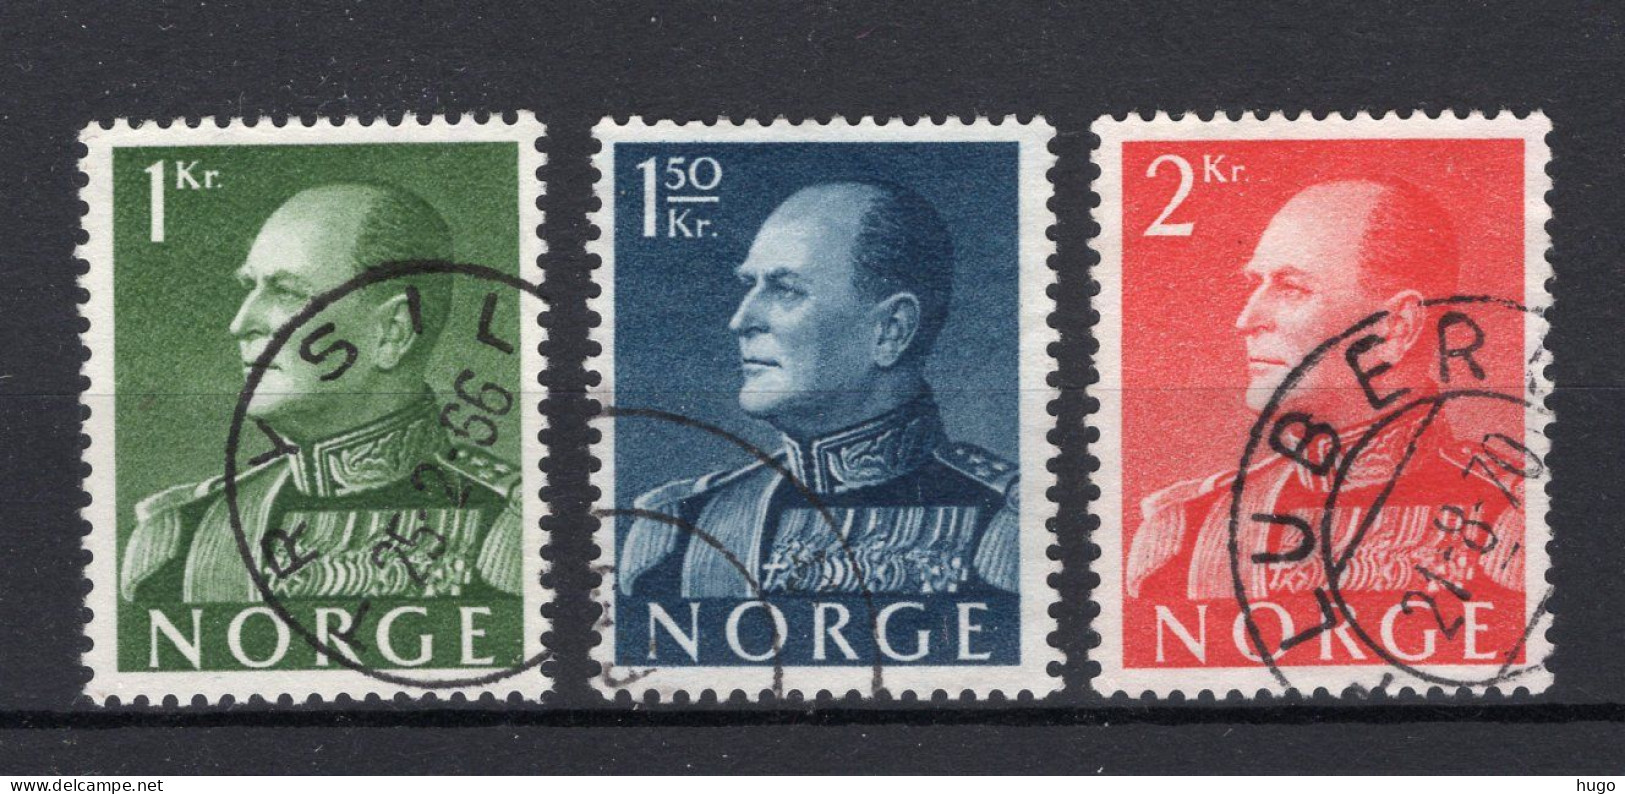 NOORWEGEN Yt. 551/553° Gestempeld 1969 - Used Stamps